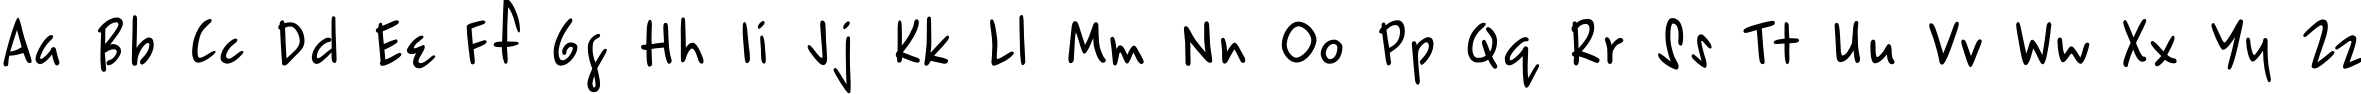 Пример написания английского алфавита шрифтом EpsilonC